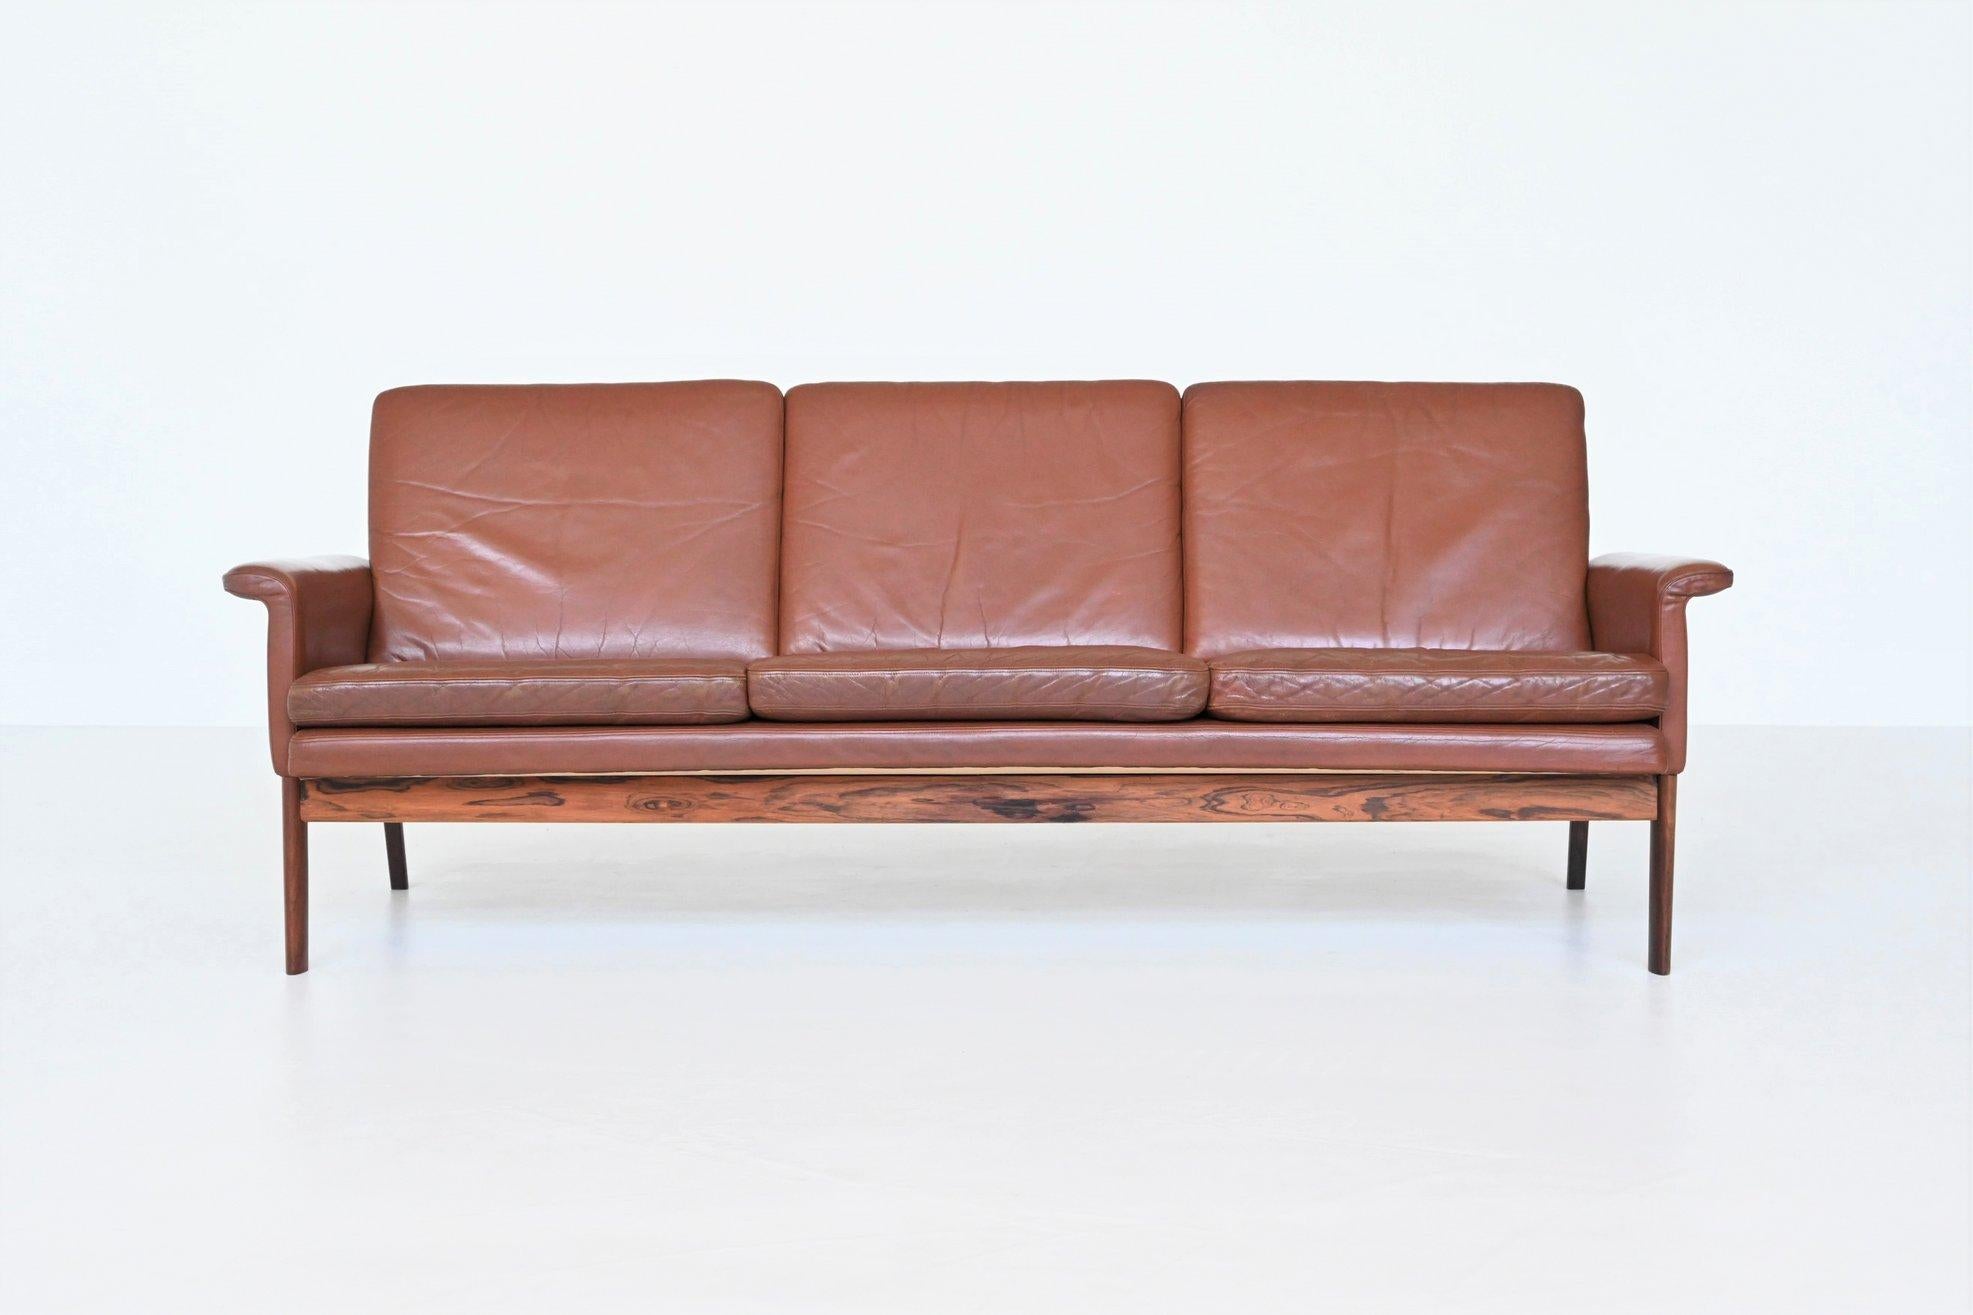 Magnifique canapé 3 places Jupiter modèle 218 conçu par Finn Juhl pour France & Son, Danemark 1965. Le canapé est exécuté en cuir brun chocolat soutenu par un cadre en bois de rose massif. Il présente des lignes épurées et des détails subtils tels